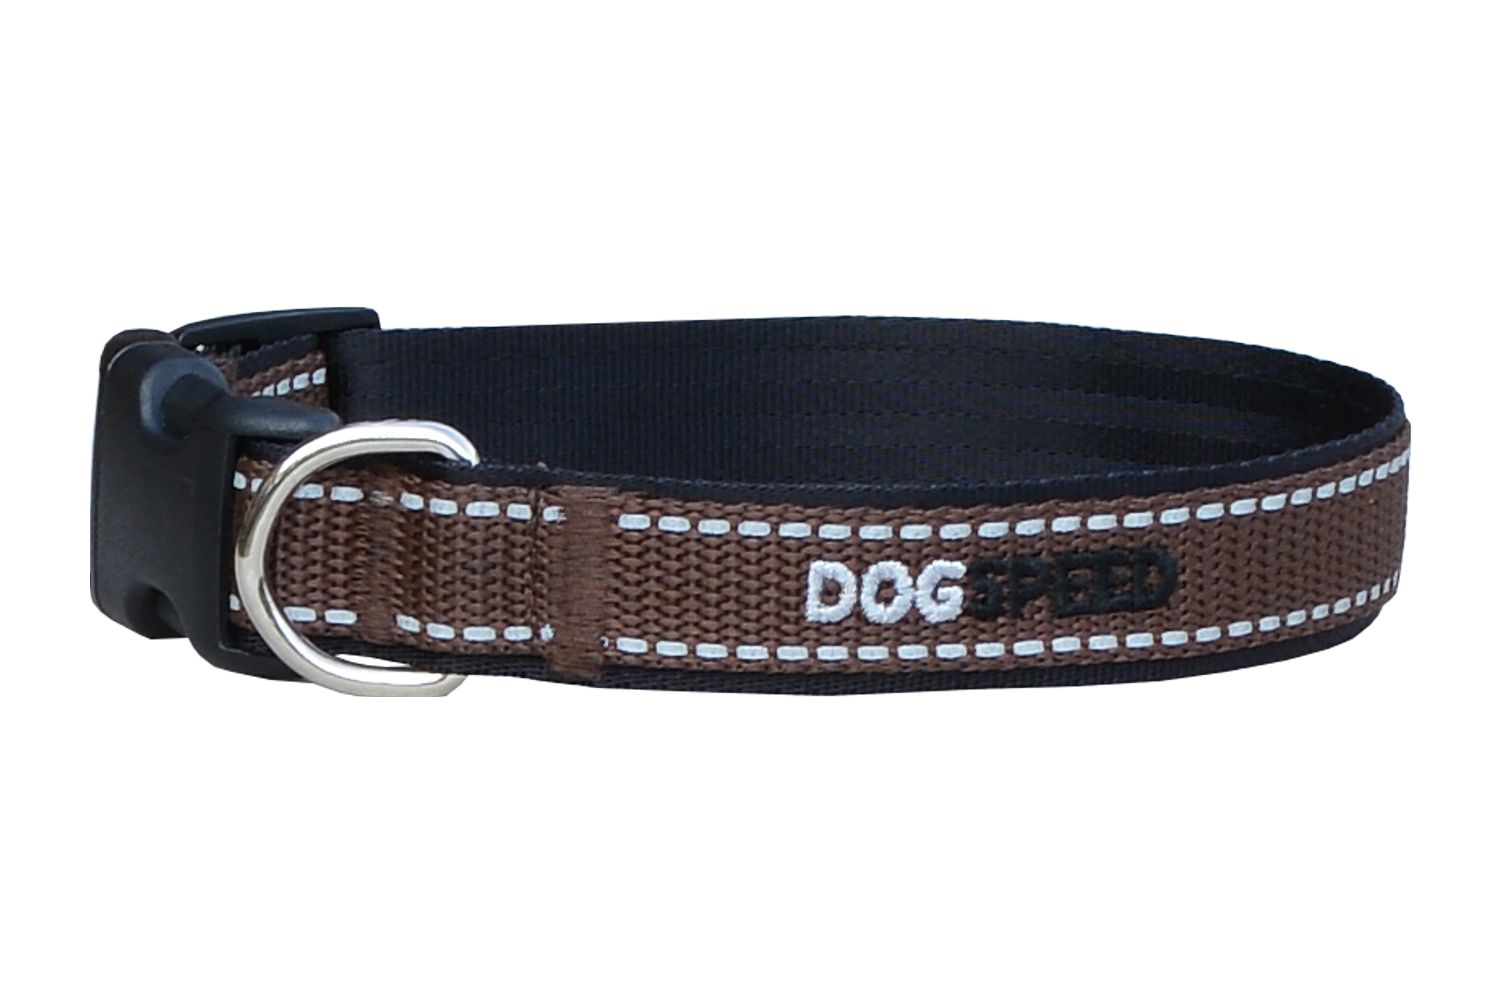 Obroża dla psa czarno-brązowa z odblaskiem, możliwy haft np. imię psa, szer. 2,5cm 